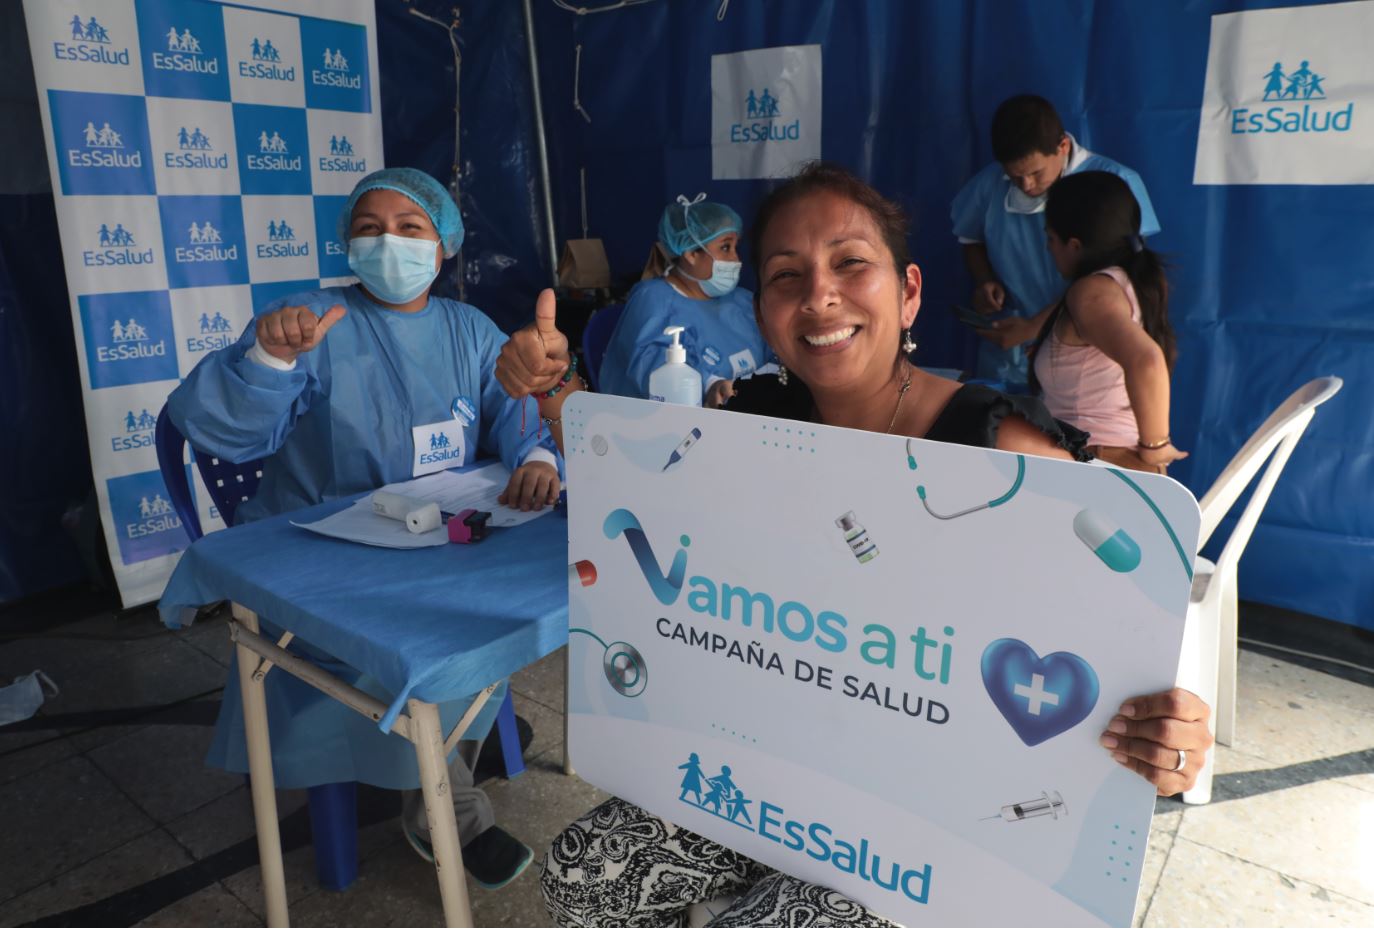 Essalud - EsSalud y Panamericana TV se unen y permiten la atención de más de 200 personas en campaña de salud “Vamos a ti”